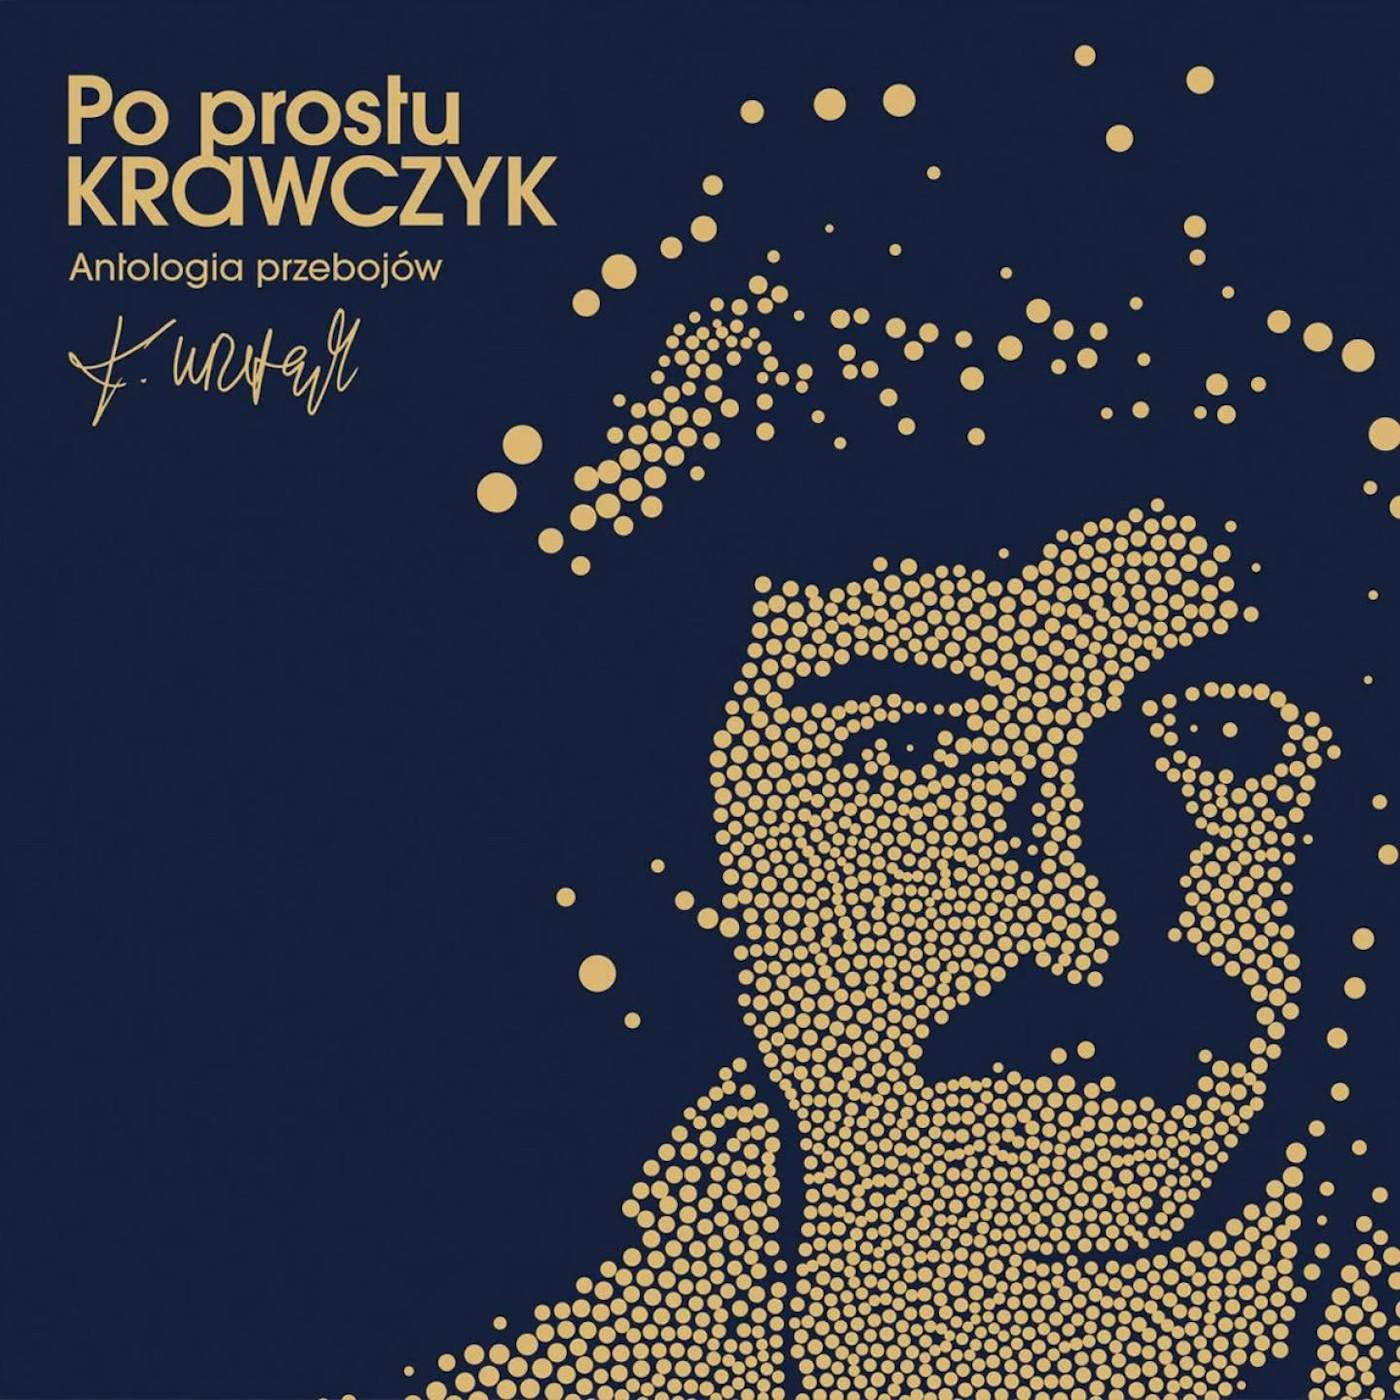 Krzysztof Krawczyk PO PROSTU KRAWCZYK ANTOLOGIA PRZEBOJOW Vinyl Record